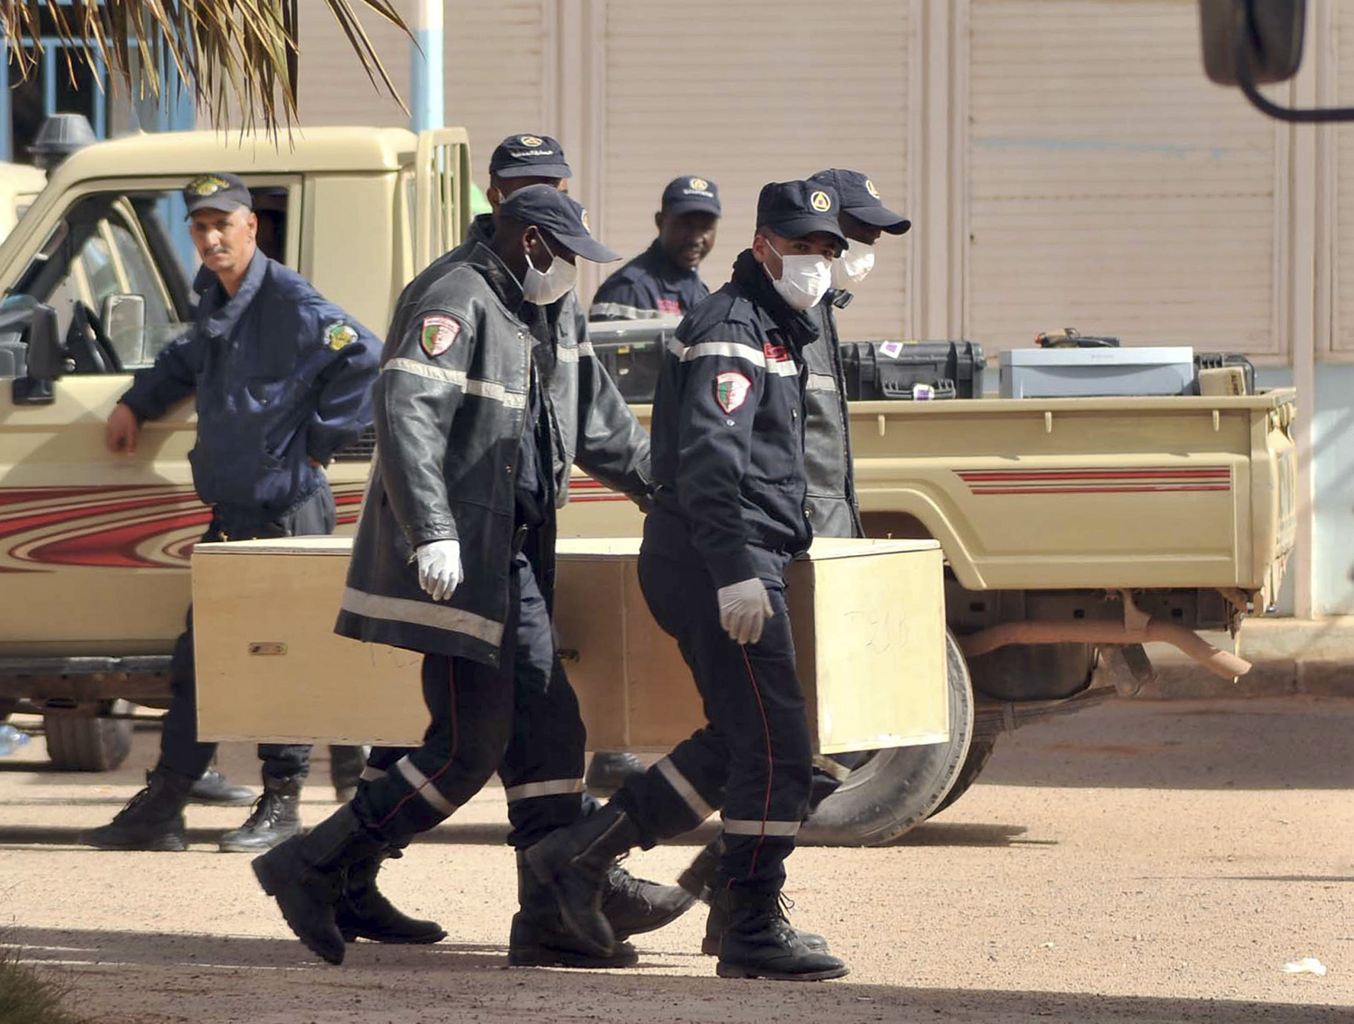 阿尔及利亚人质事件致37名外国人遇难 两加拿大人参与劫持事件